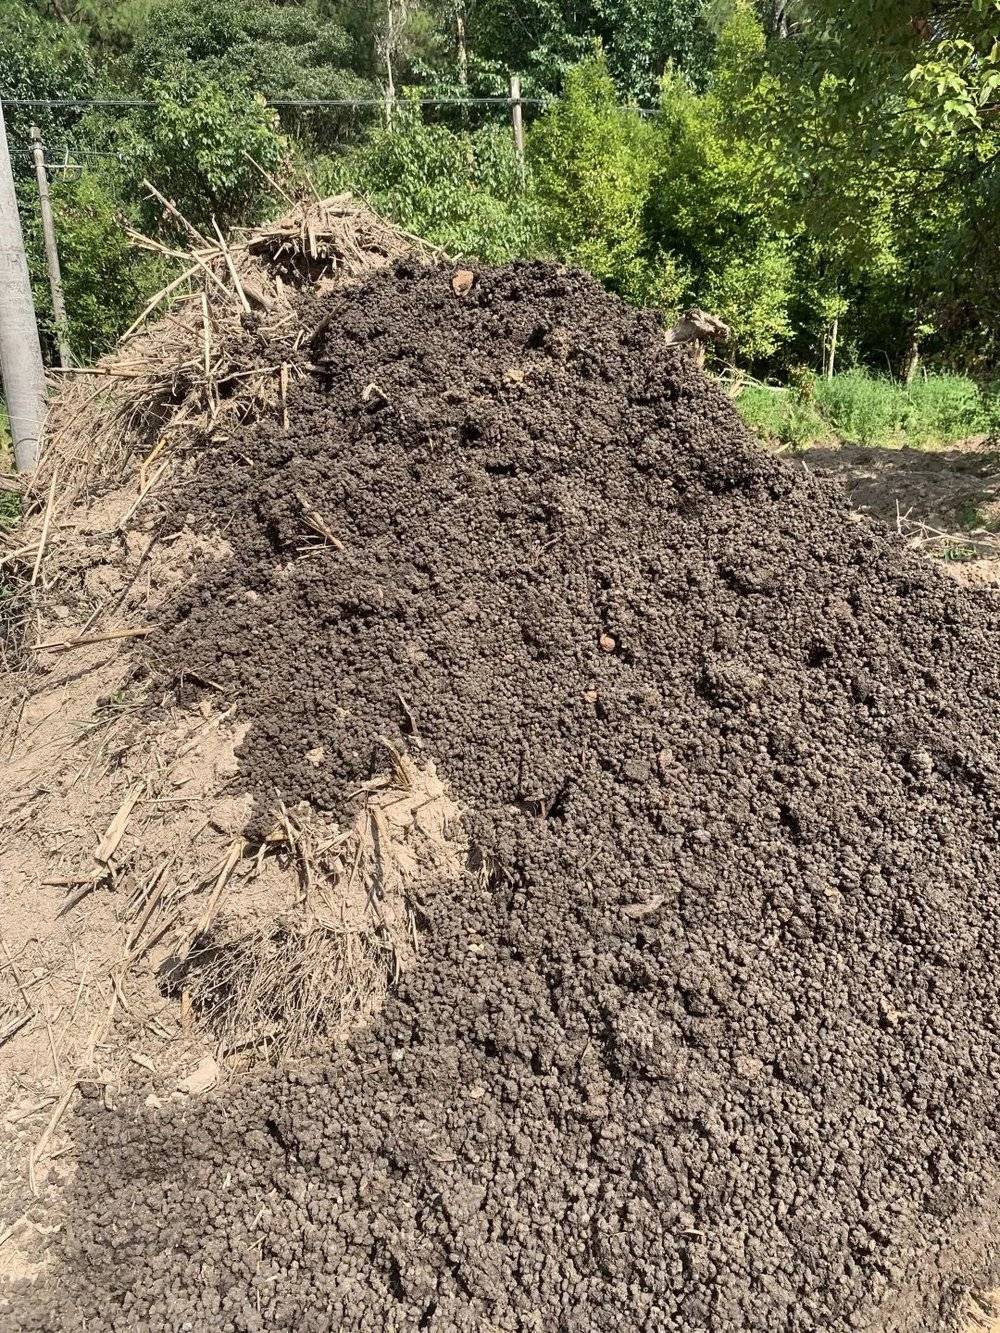 我的堆肥方法，简单说就是一层腐植质土、一层羊粪、一层麦麸，酒酵素红糖水至水分50～60%，如此往复，图为九层的“土地三明治”：土、粪、麦麸各九层。<br>